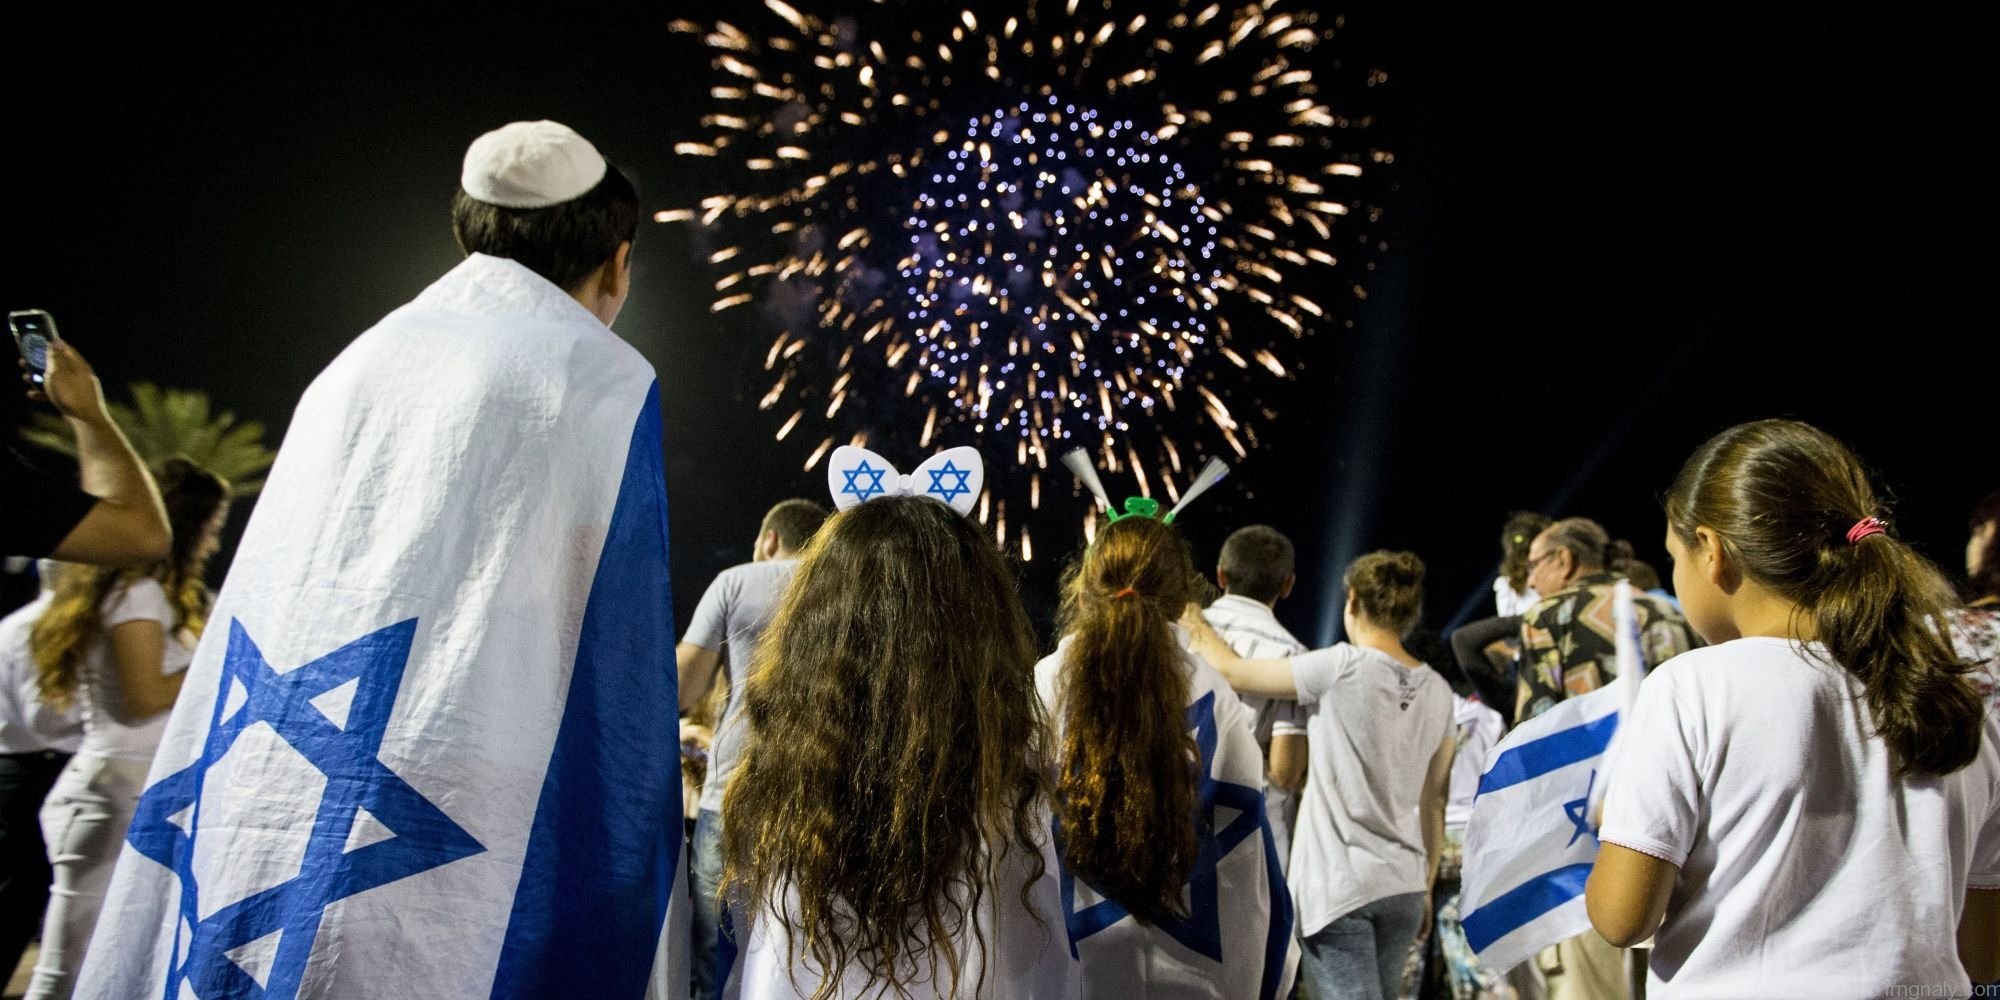 Why celebrate Israel?